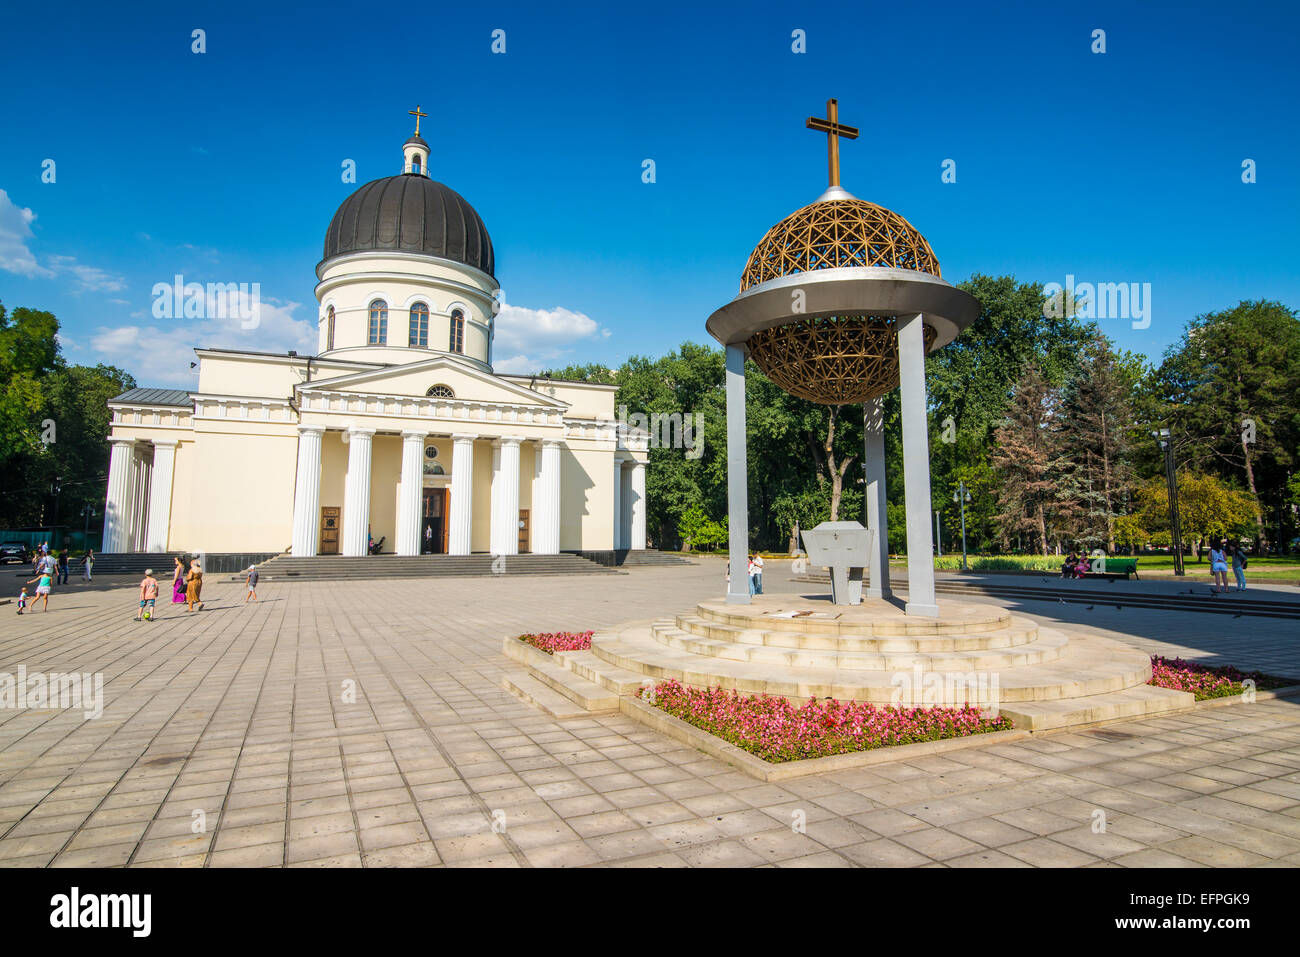 La cathédrale de la nativité dans le centre de Chisinau, capitale de la Moldavie, de l'Europe Banque D'Images